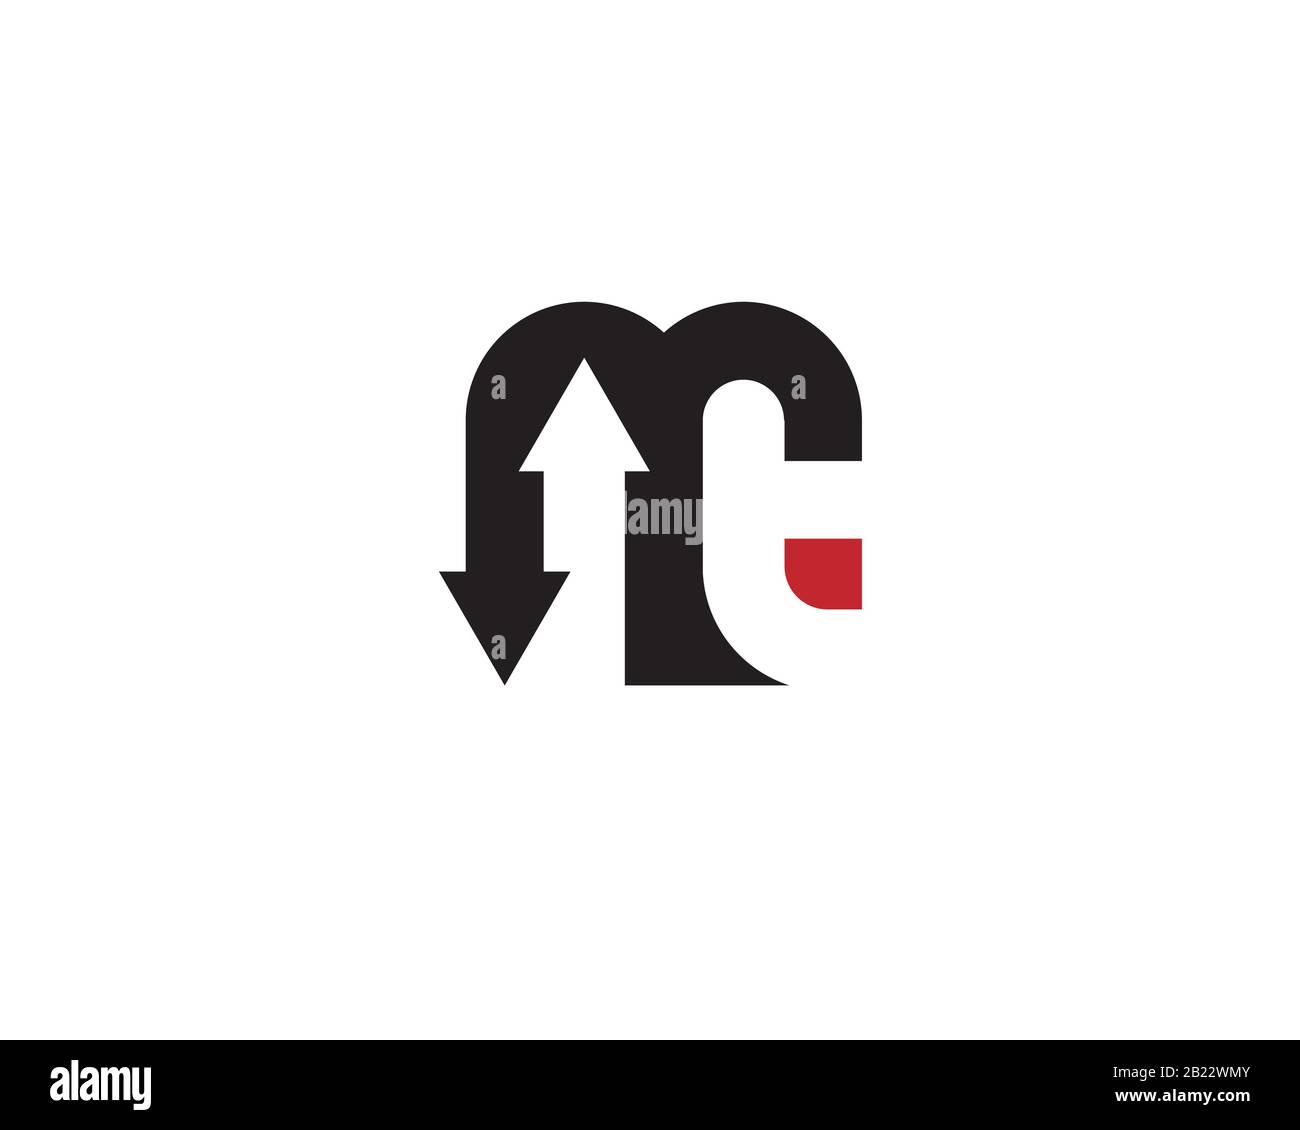 monogramme anagram lettermark logo de la lettre m i n t avec les flèches vers le haut et vers le bas Illustration de Vecteur